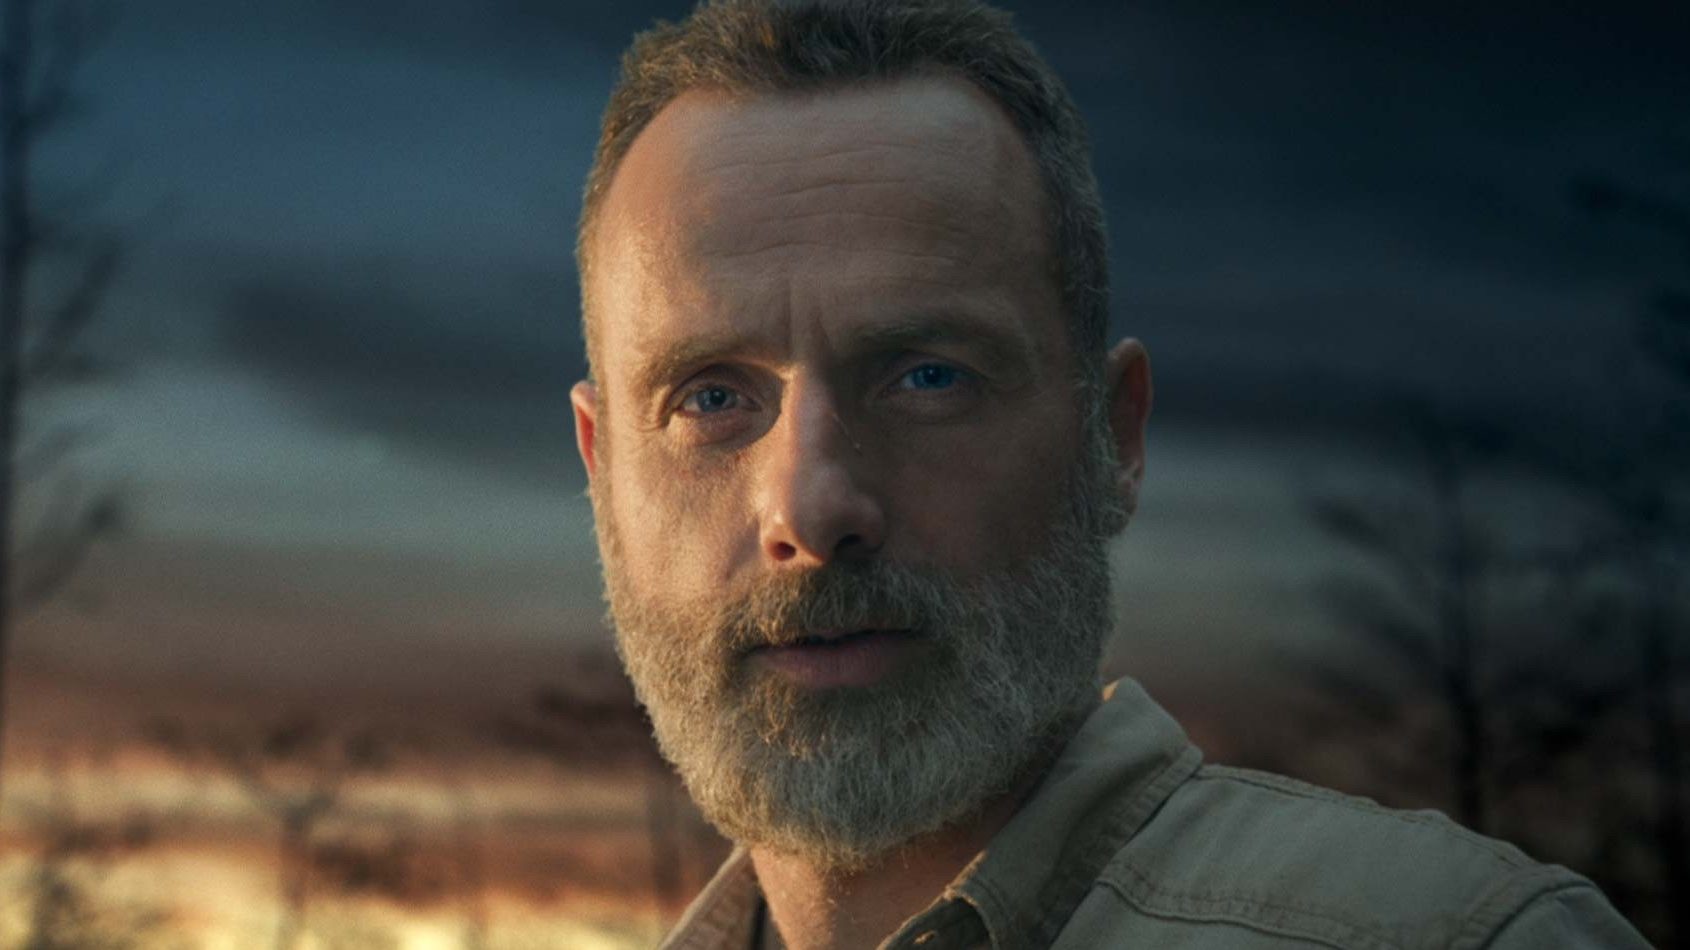 Filme de The Walking Dead com Rick Grimes ganha primeiro teaser